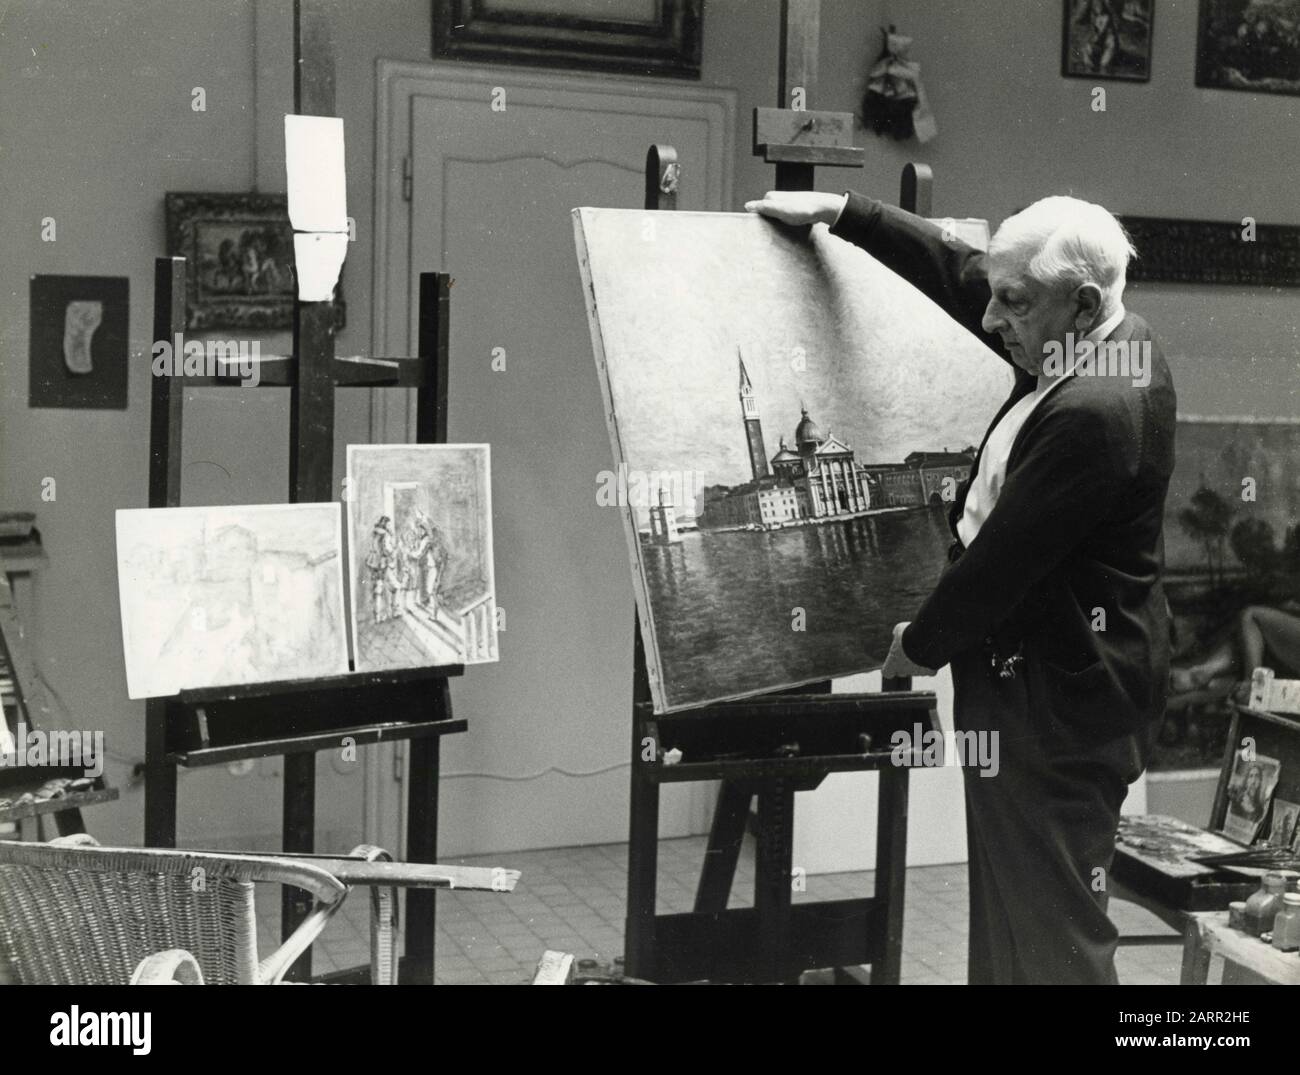 Artiste peintre italien Giorgio de Chirico dans son atelier, Rome, Italie 1964 Banque D'Images